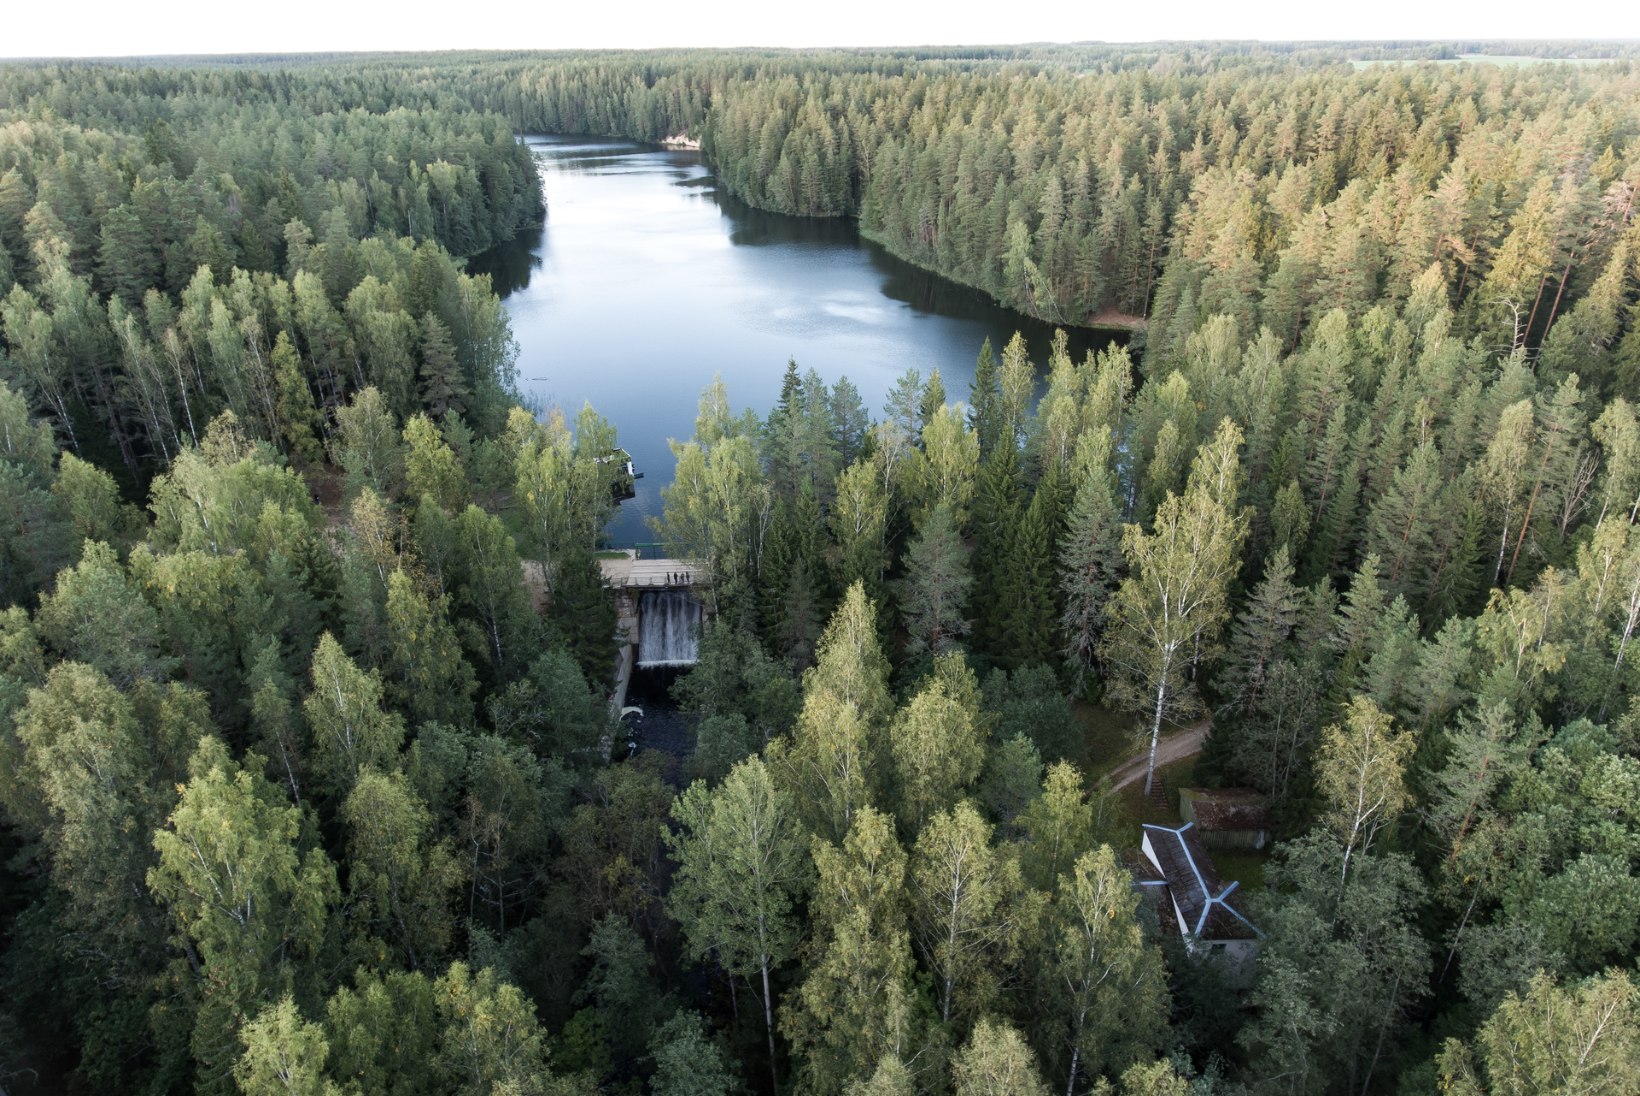 Tarmo Soomere kliimamuutustest: „Eestil on vedanud, aga peame vaatama maailma laiemalt. Igaühe panus loeb.“